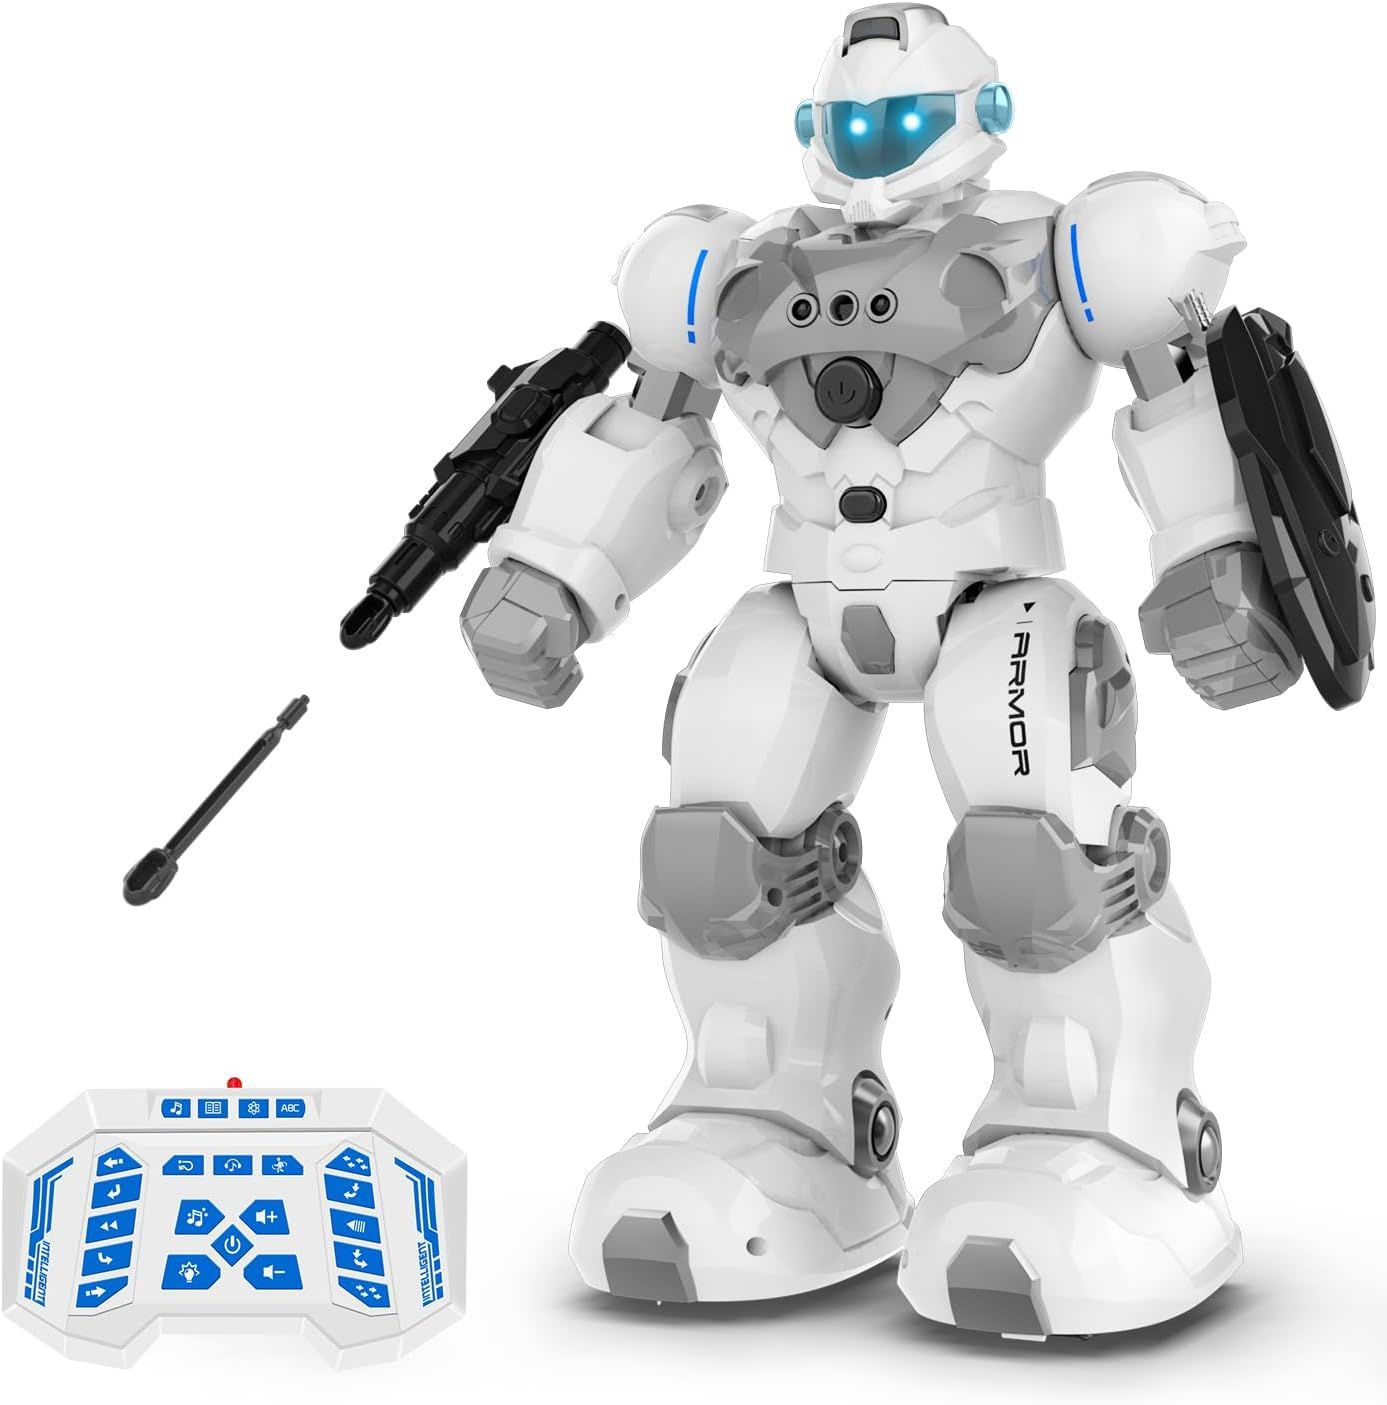 STEMTRON Programlanabilir Uzaktan Kumandalı Robot - Beyaz